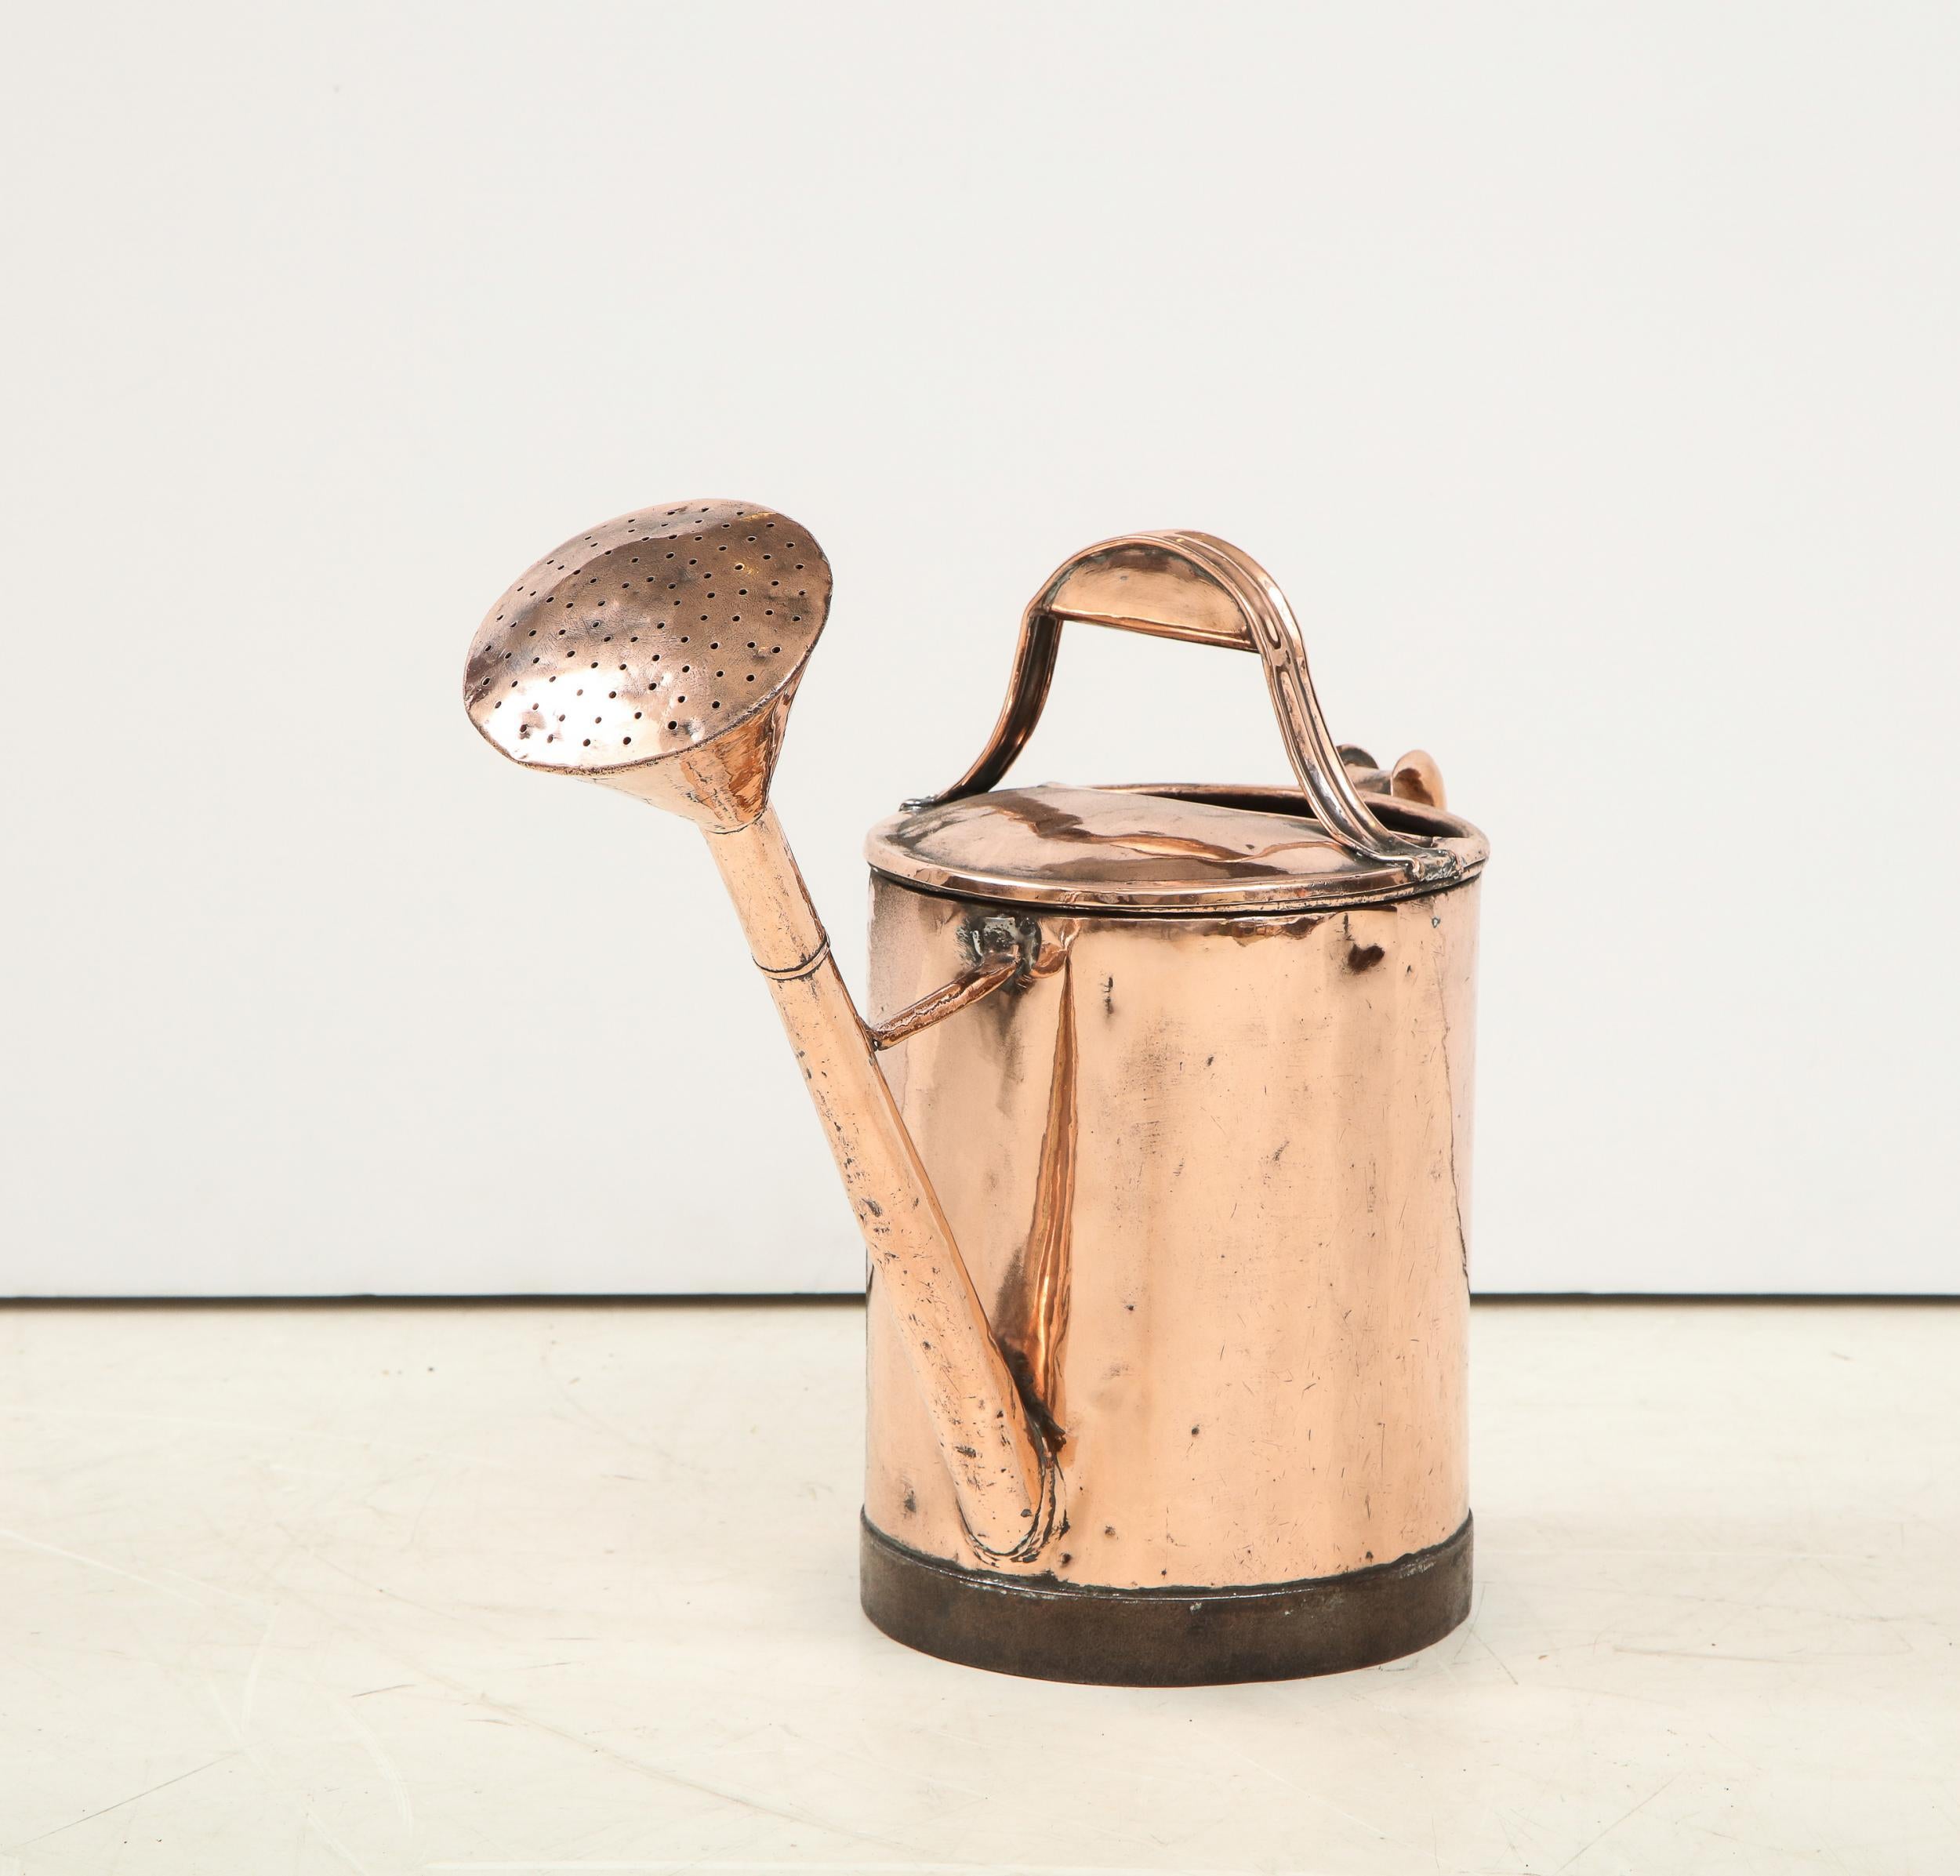 Bon arrosoir en cuivre du XIXe siècle, de forme cylindrique, doté d'une poignée de transport et d'une poignée de versement, d'une tête de fleur allongée et d'une base renforcée en fer forgé.